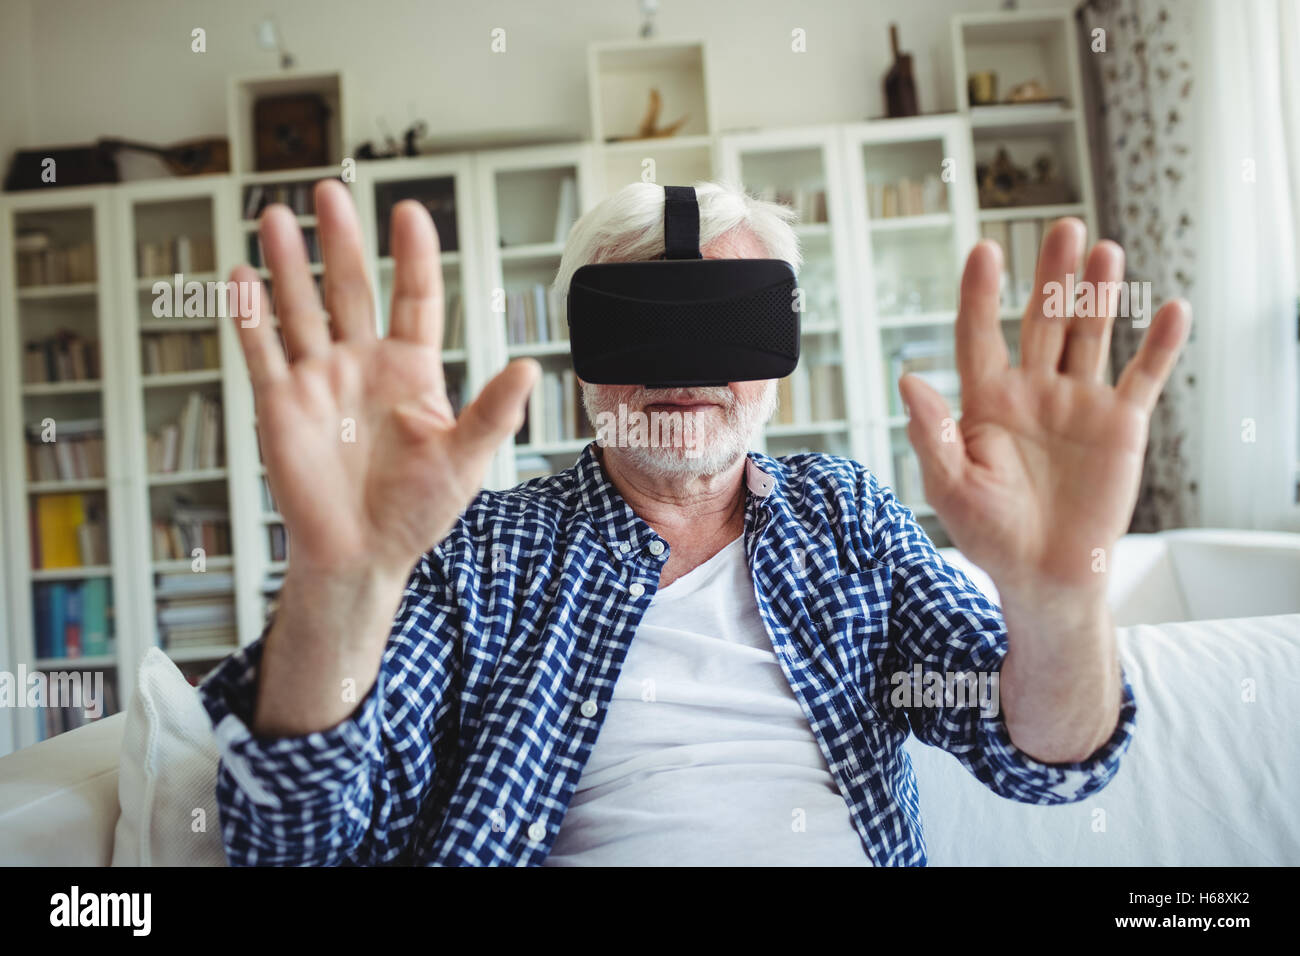 Hauts homme portant un casque de réalité virtuelle dans la salle de séjour Banque D'Images